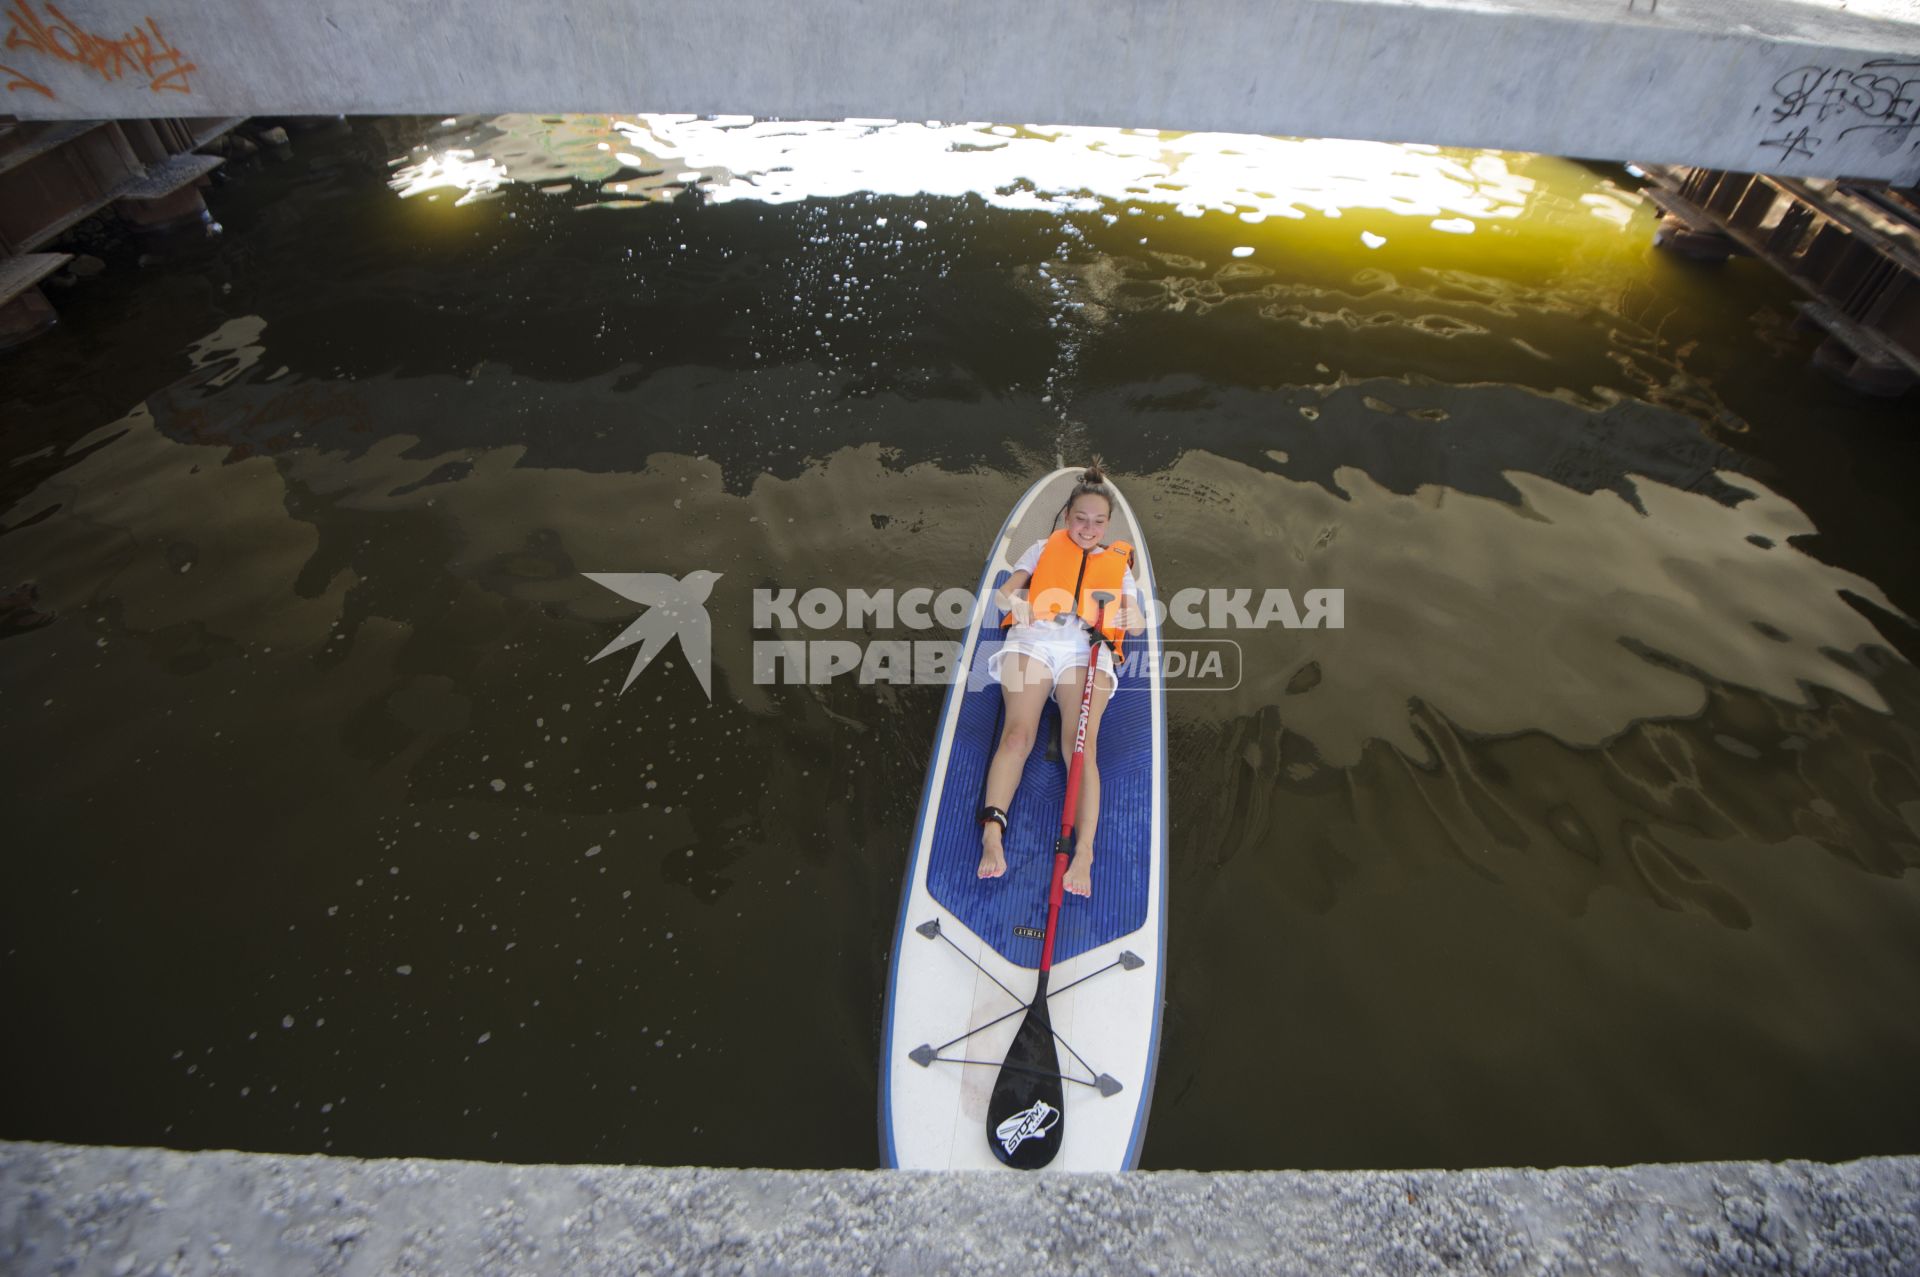 Екатеринбург. Горожане на досках для серфинга на акватории реки Исеть во время летней жары